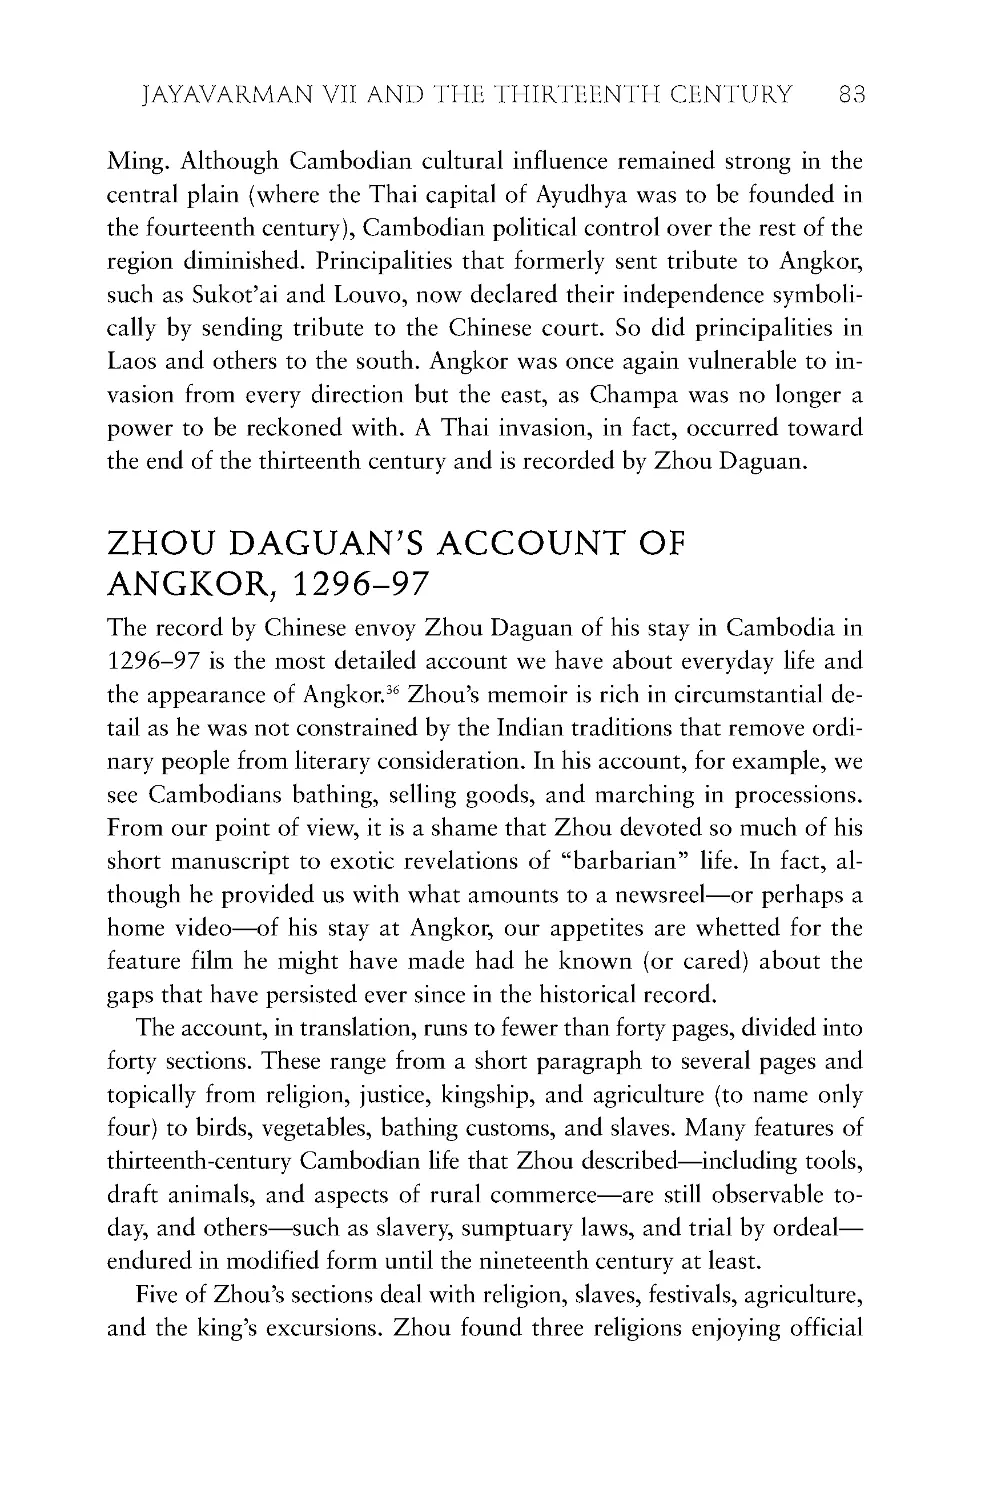 Zhou Daguan's Account of Angkor, 1296-97